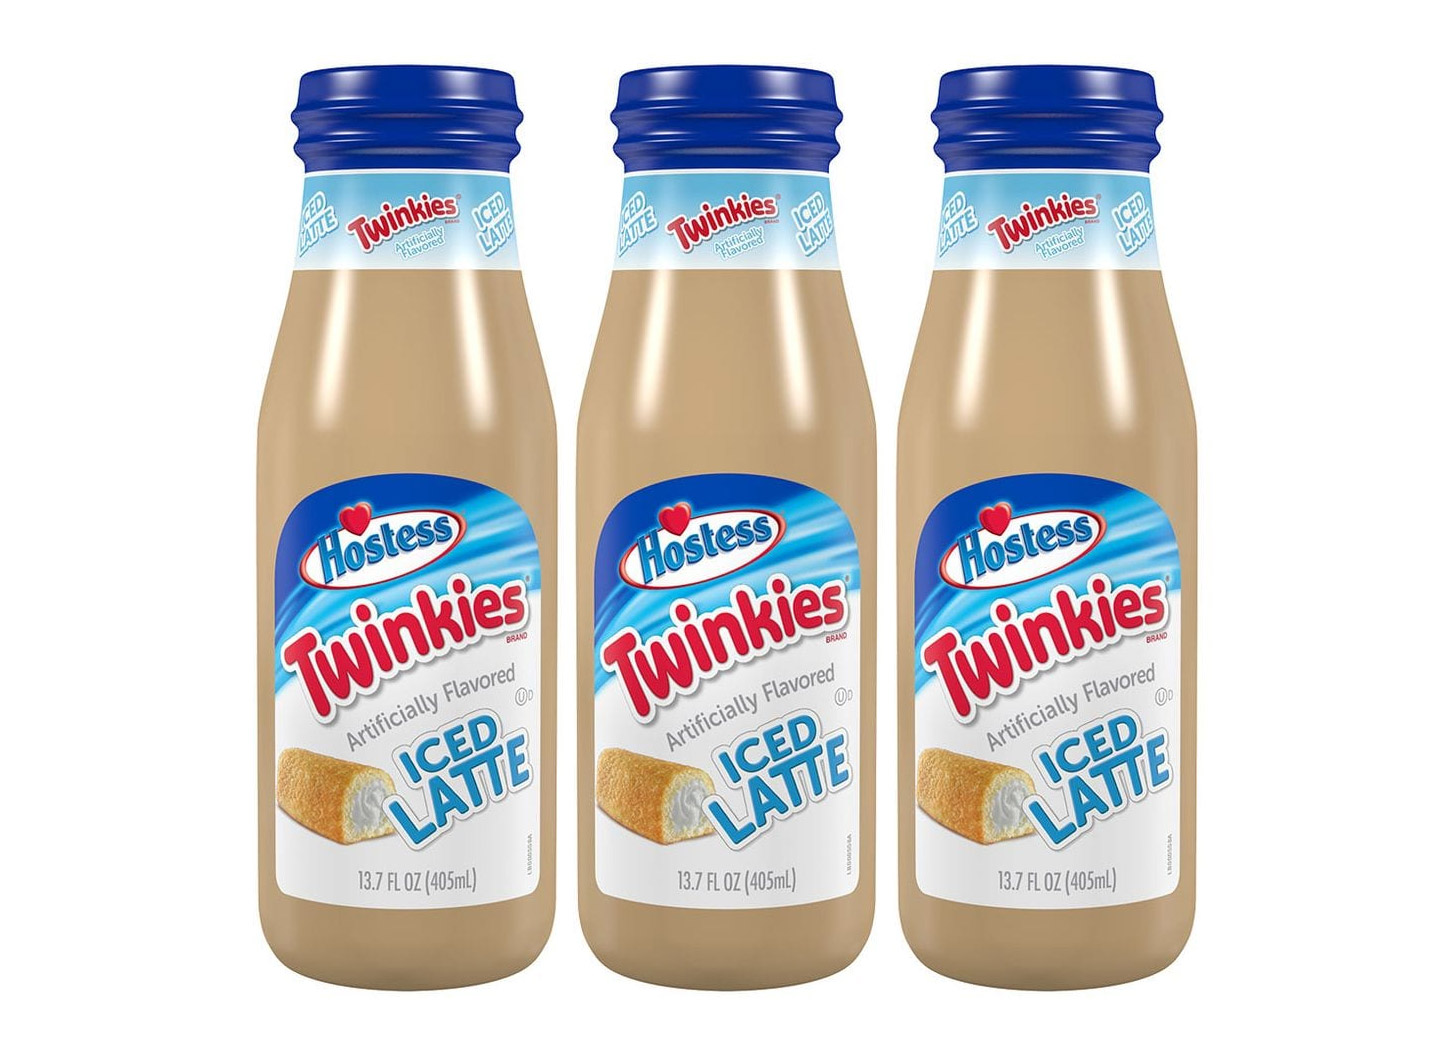 Hostess Twinkie Flavored Iced Latte Bottles - Dessert latte tastes like twinkies